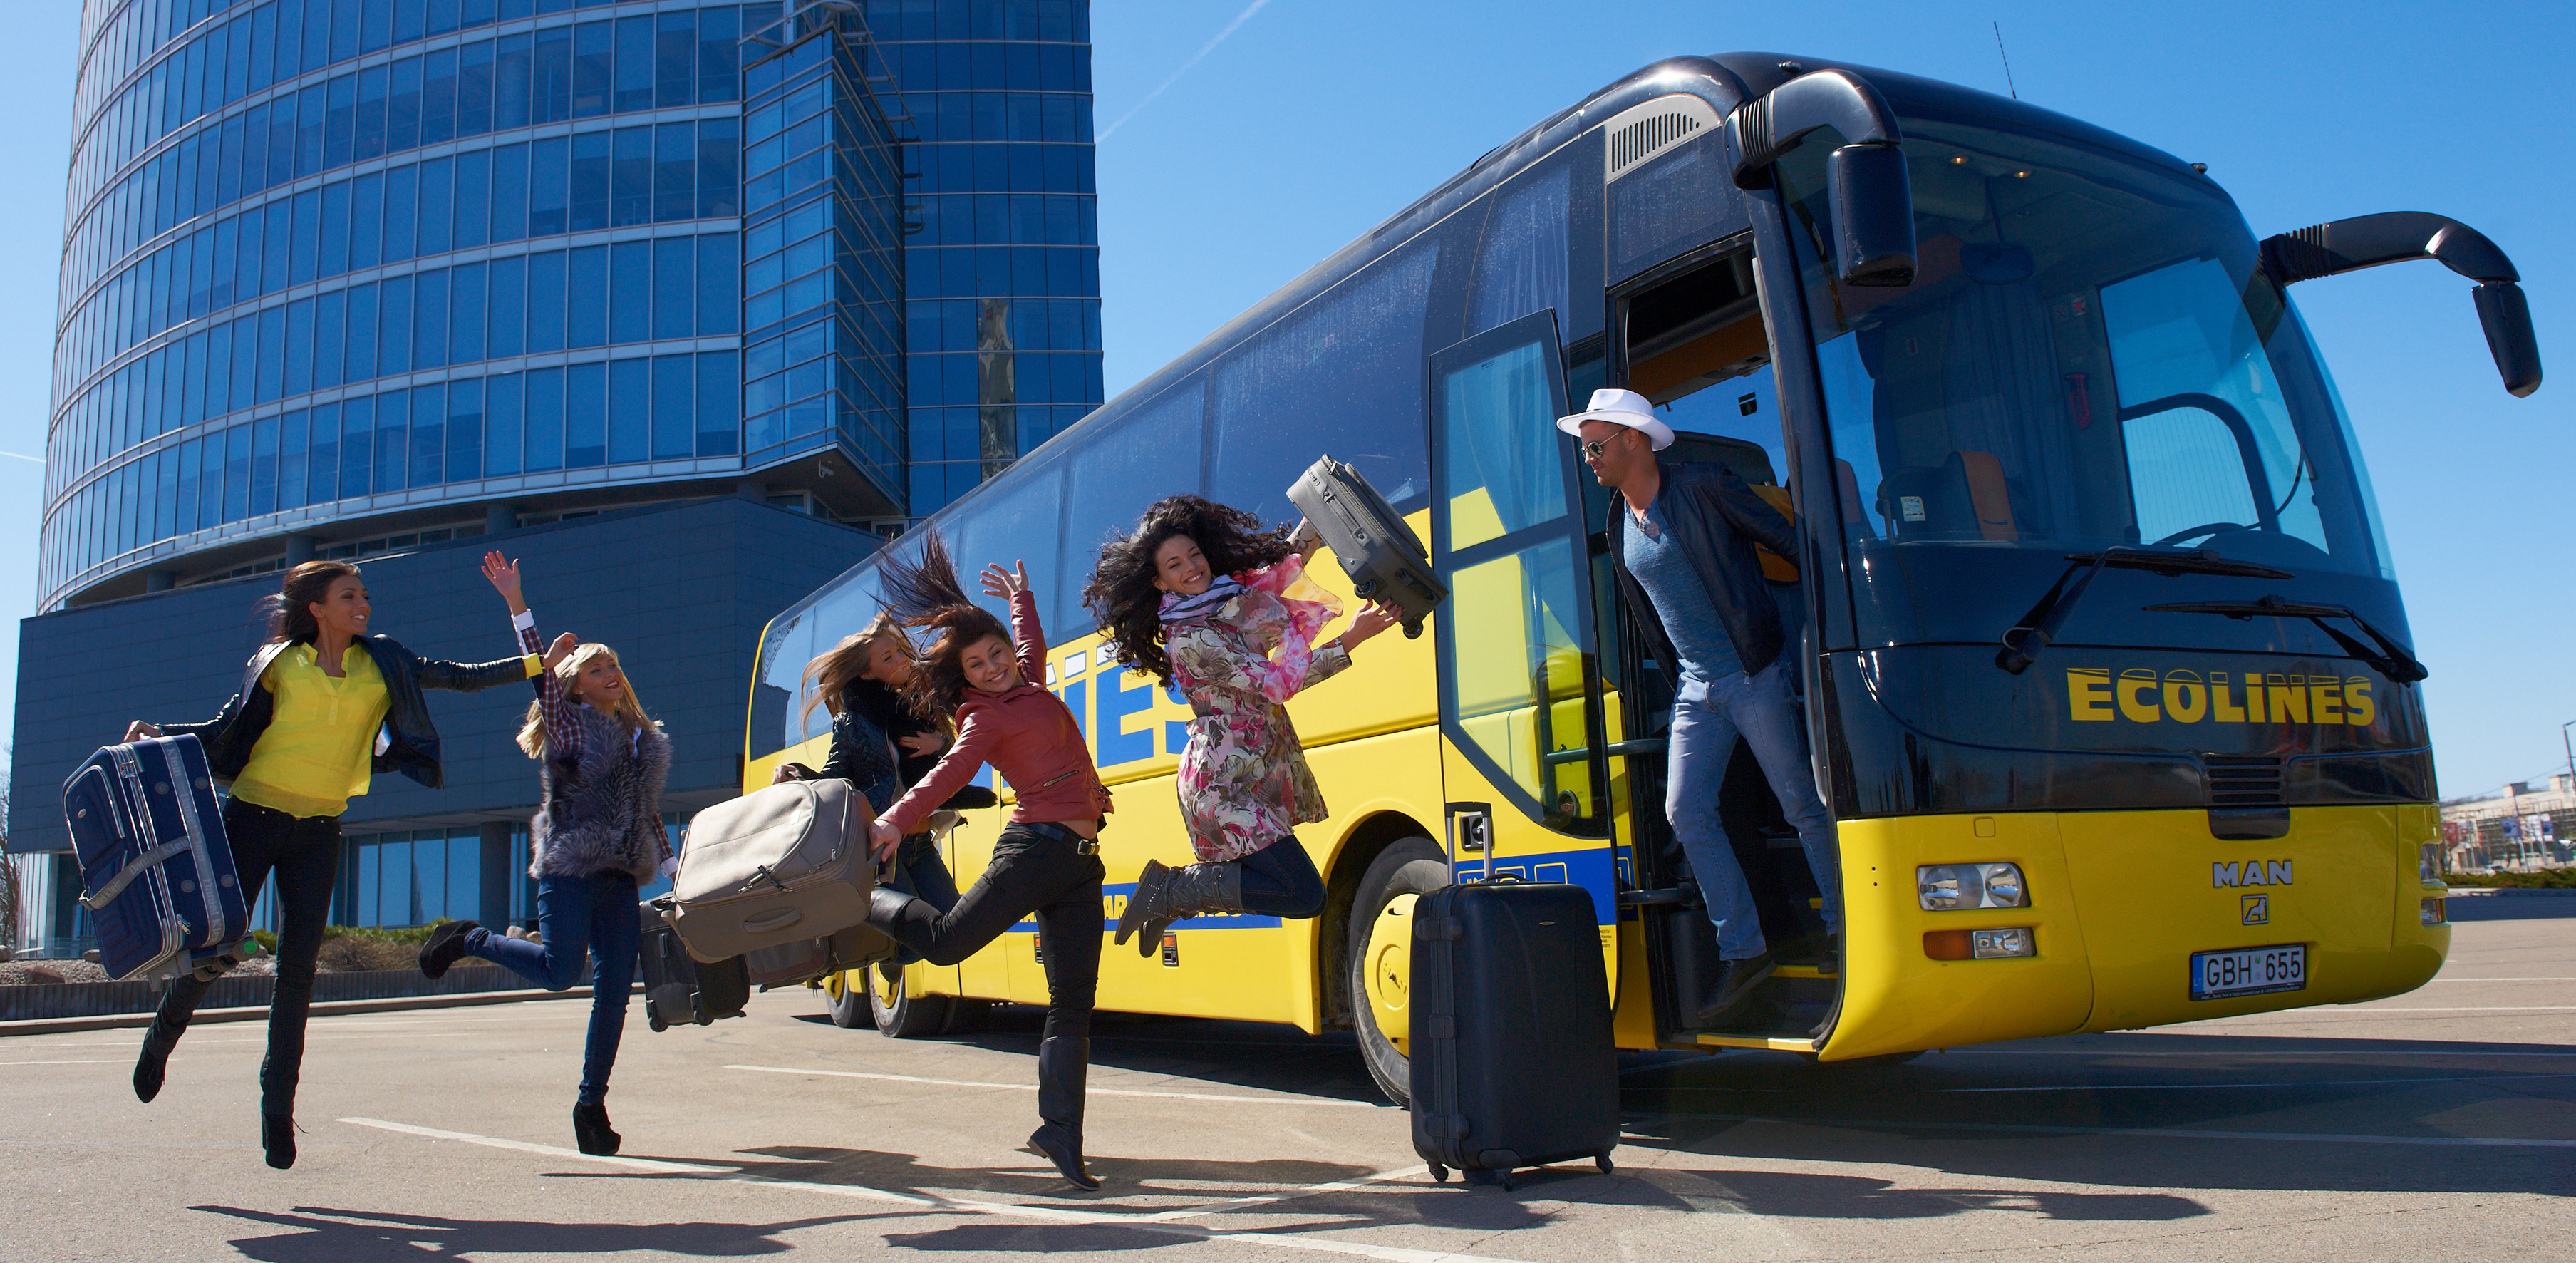 Новые возможности для туристов из России – где купить недорогие билеты на автобус для поездок в Европу?